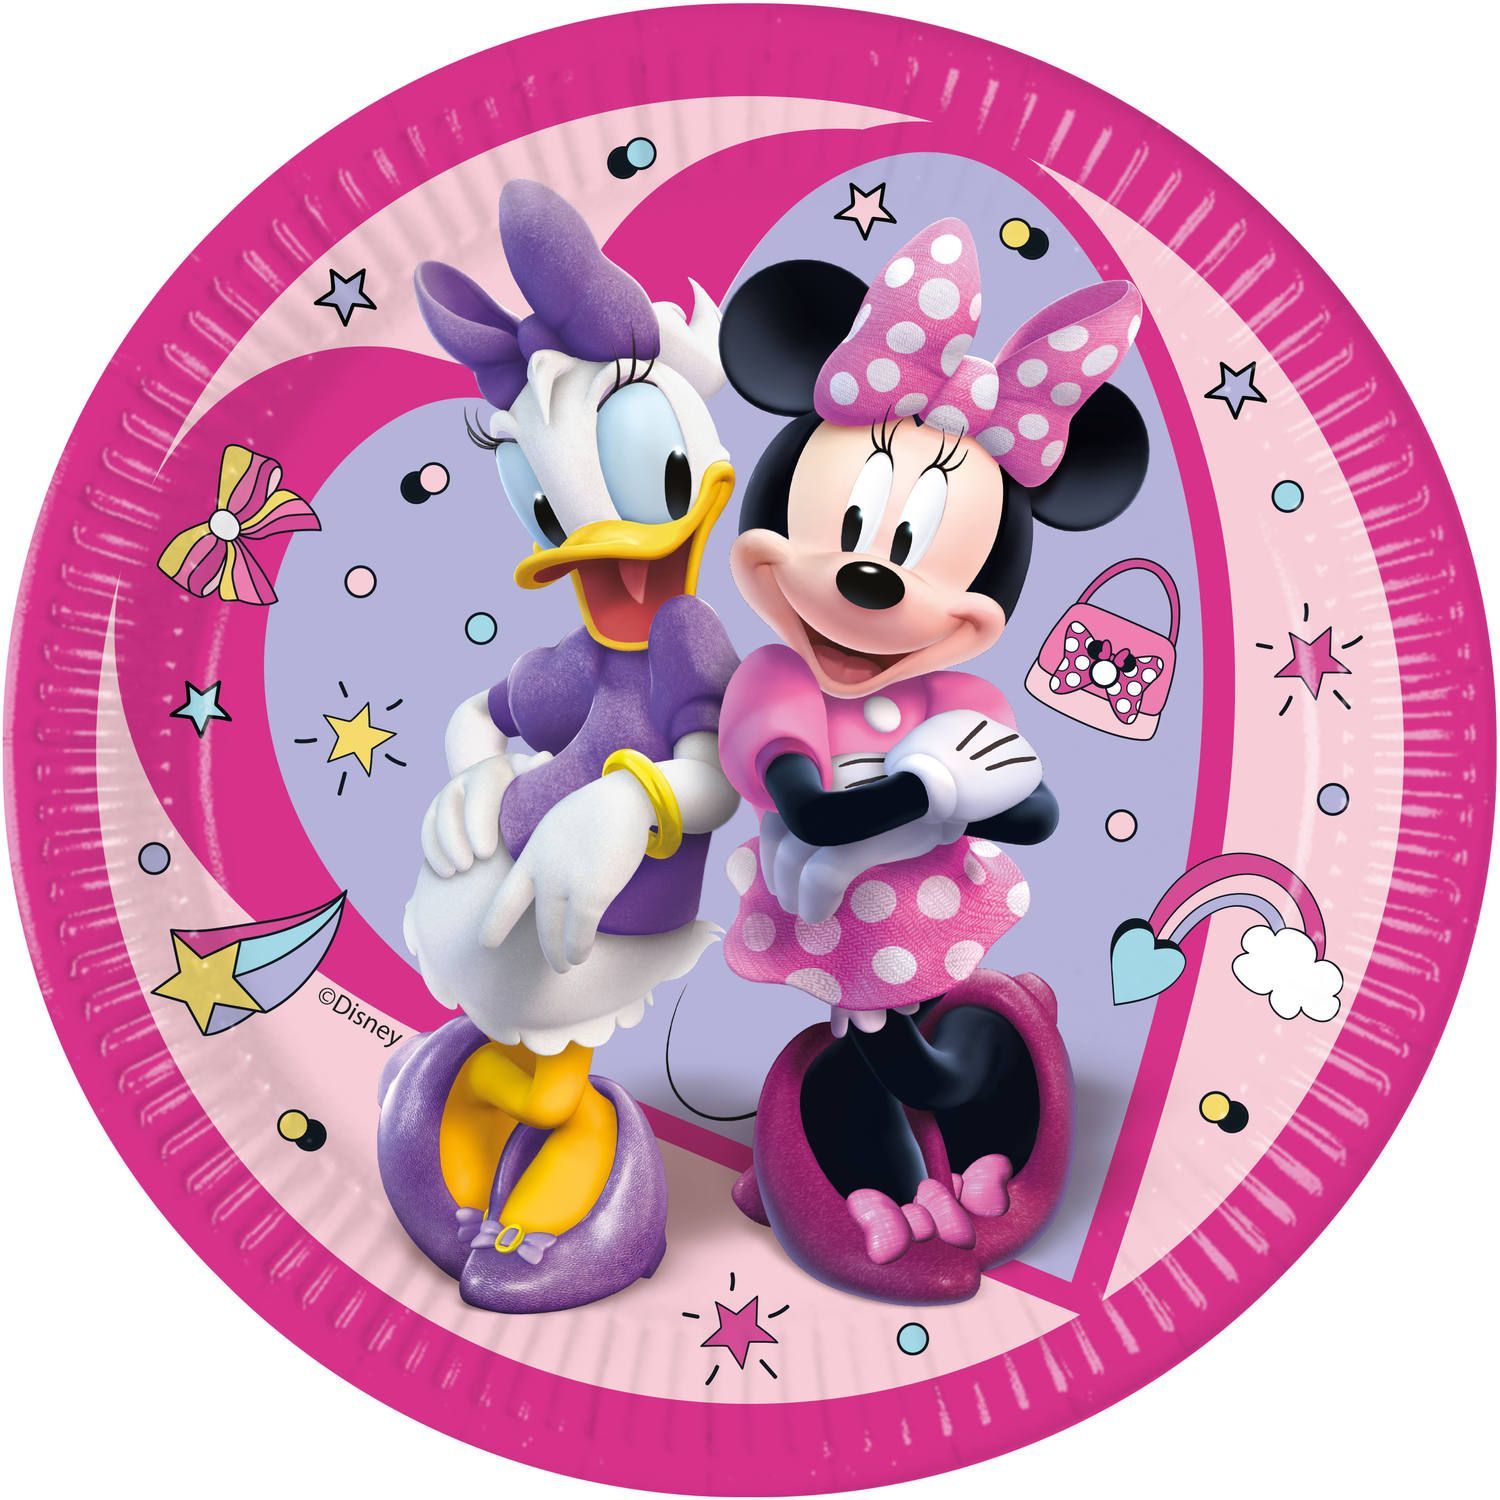 Roze Disney Minnie Mouse feestbordjes 8 stuks